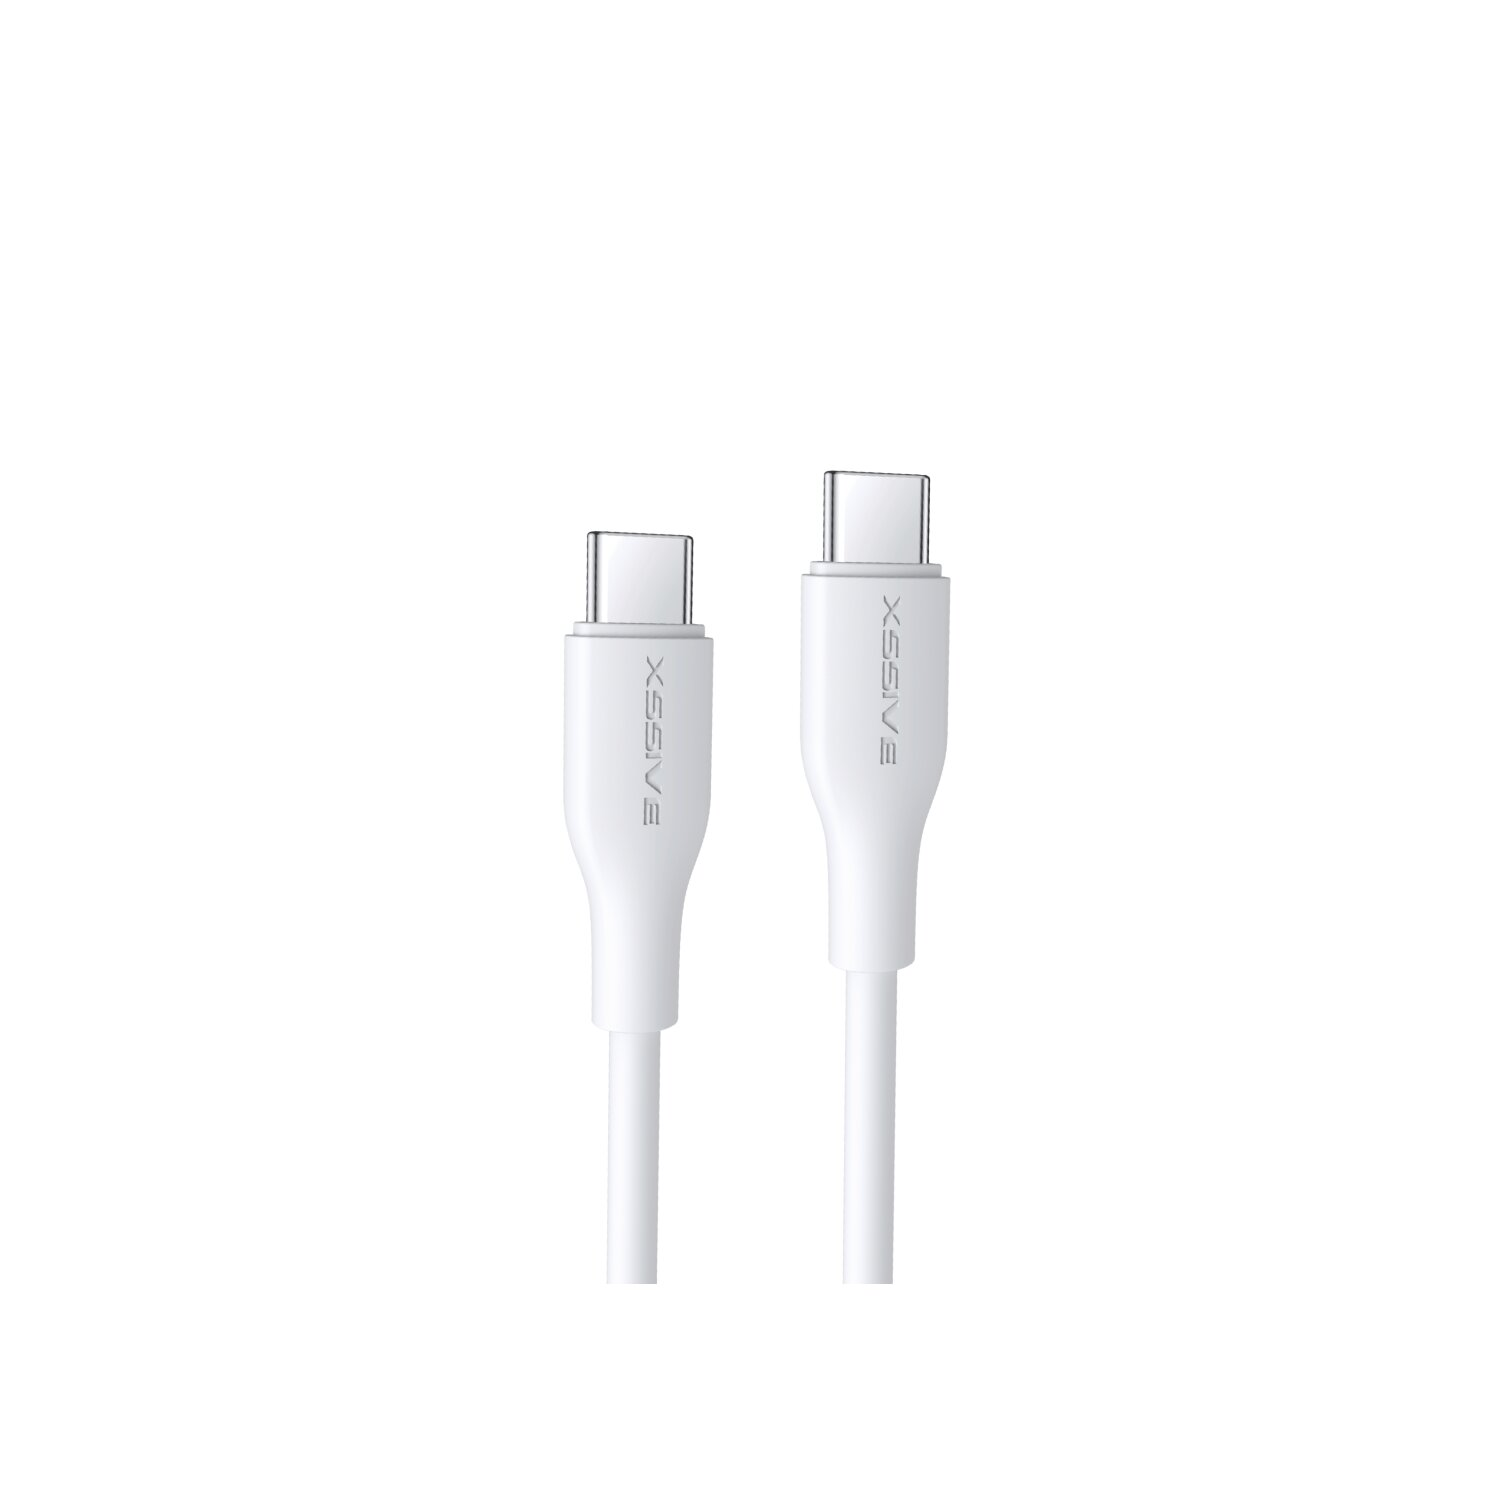 COFI 65W 3 USB-C zu Ladekabel, USB-C, Meter Weiß